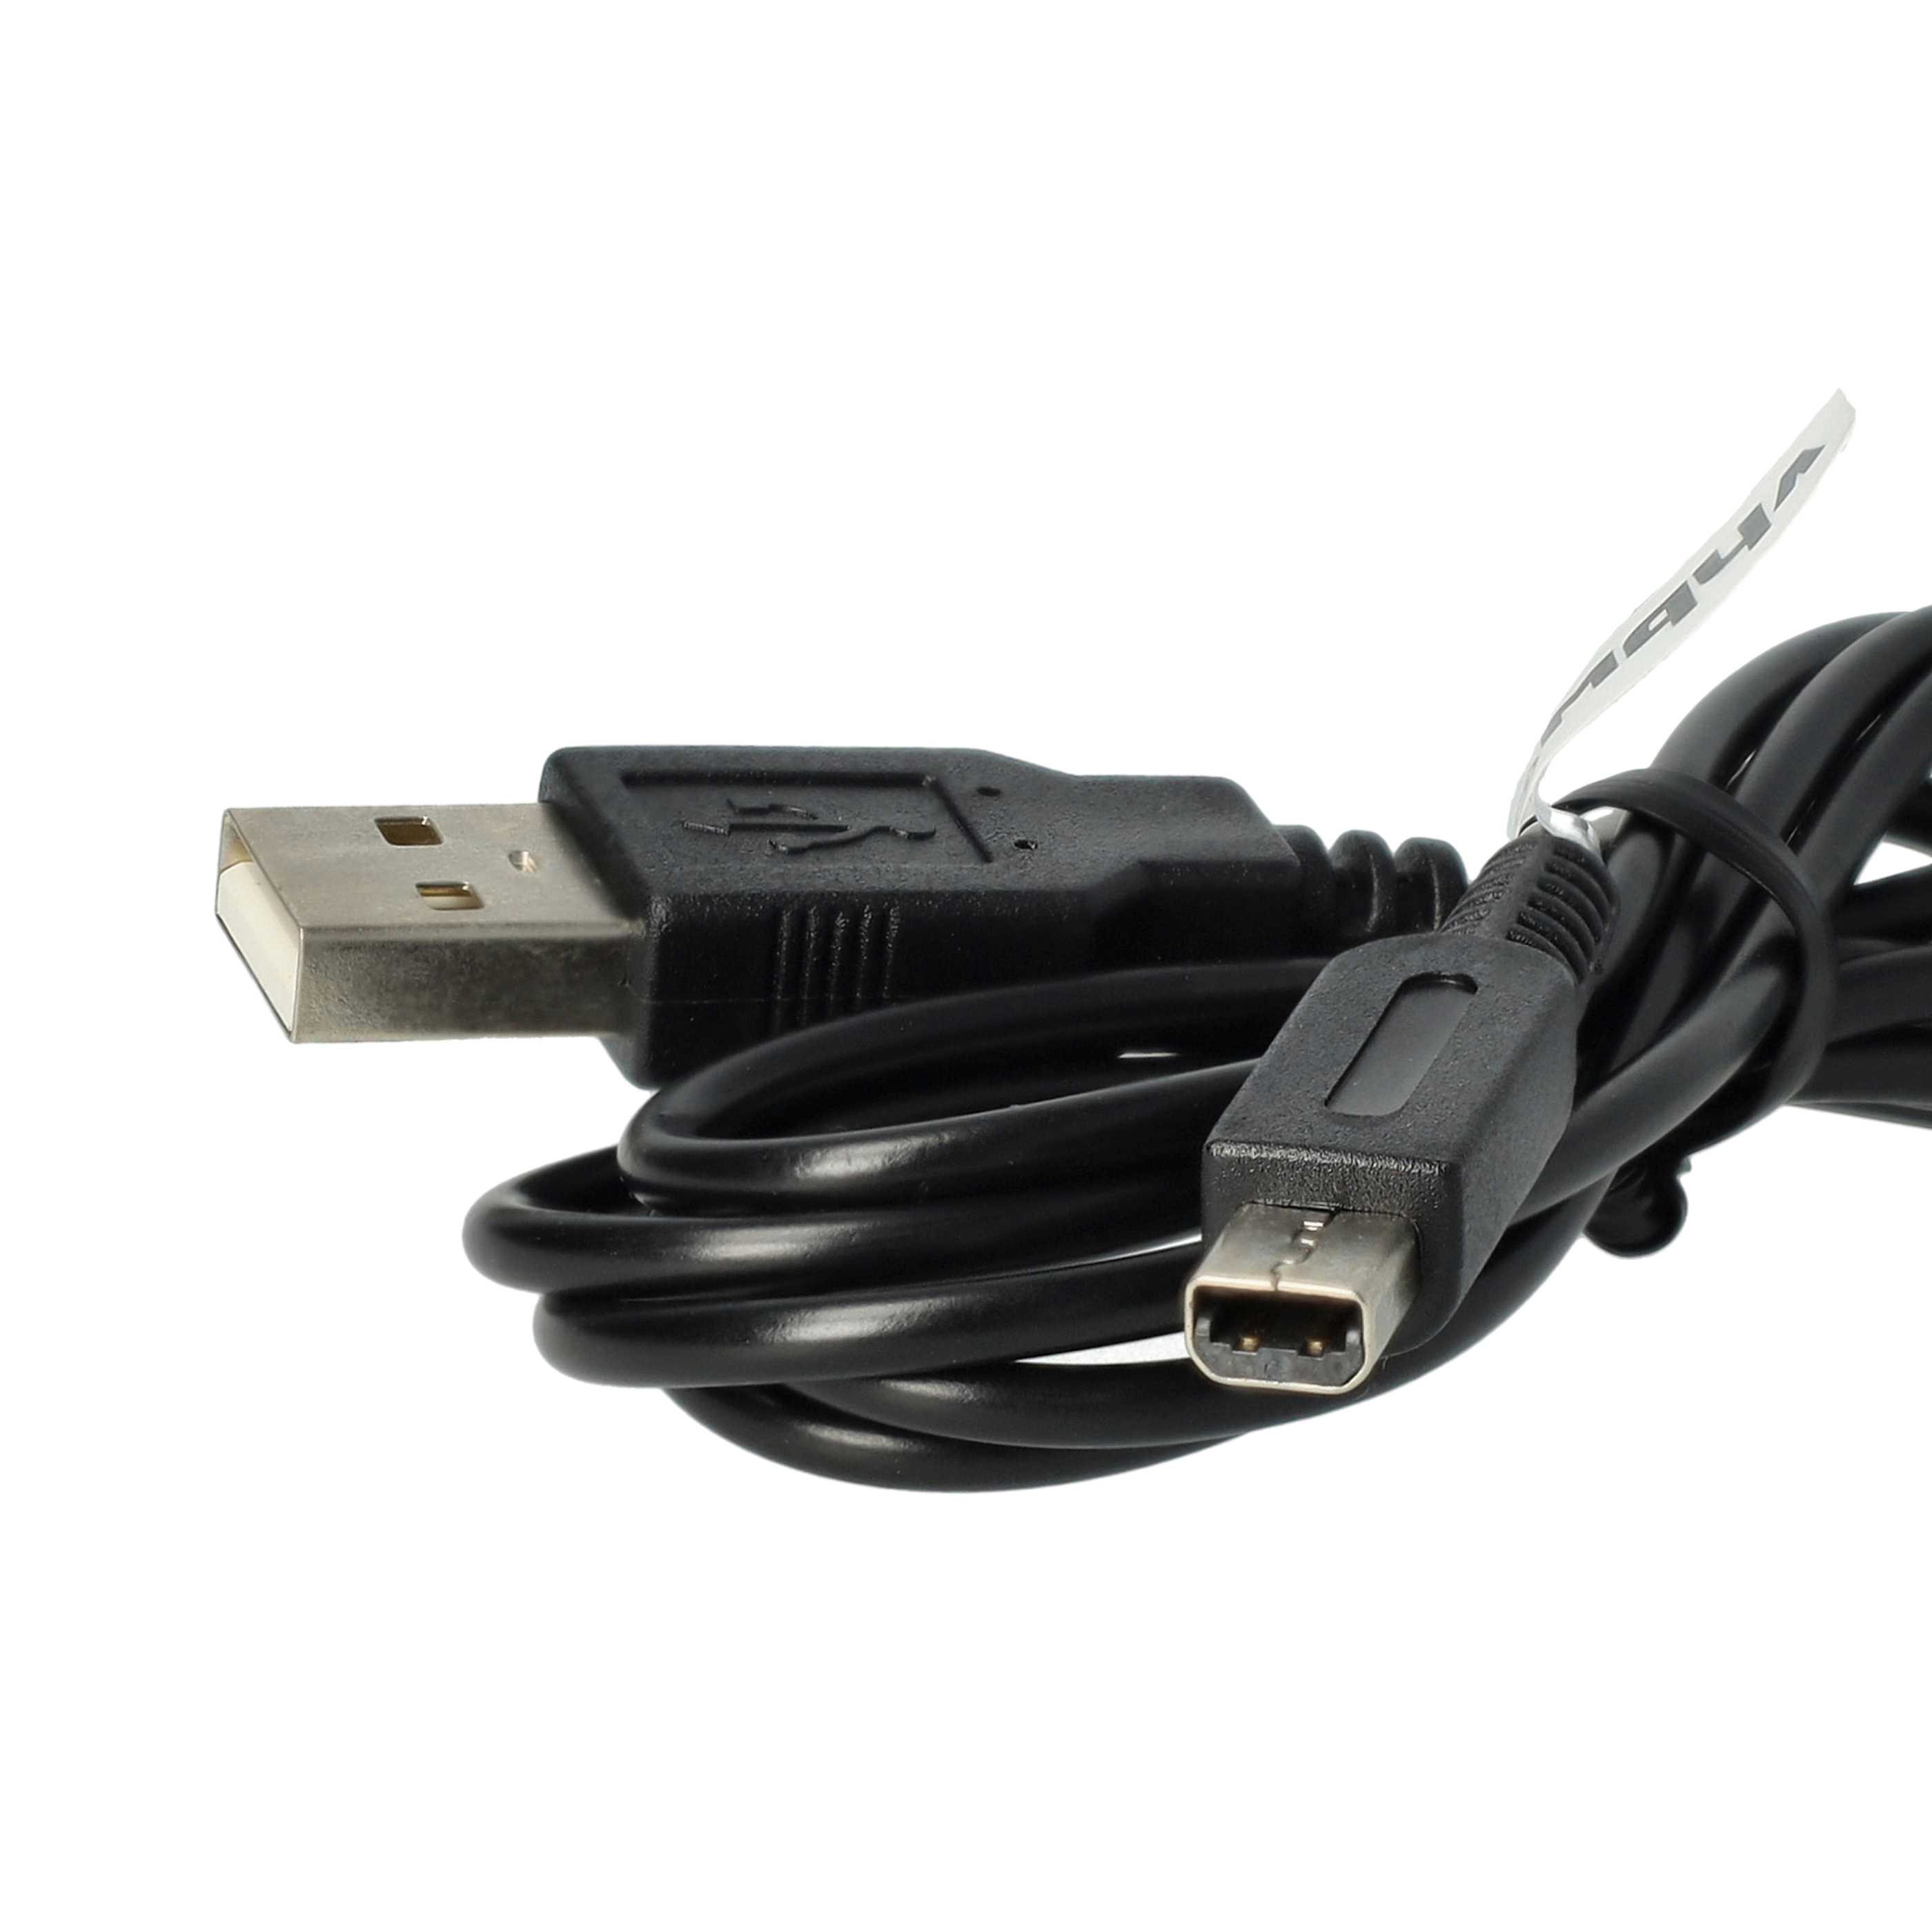 vhbw Câble USB console - câble de connexion 1,2m de long